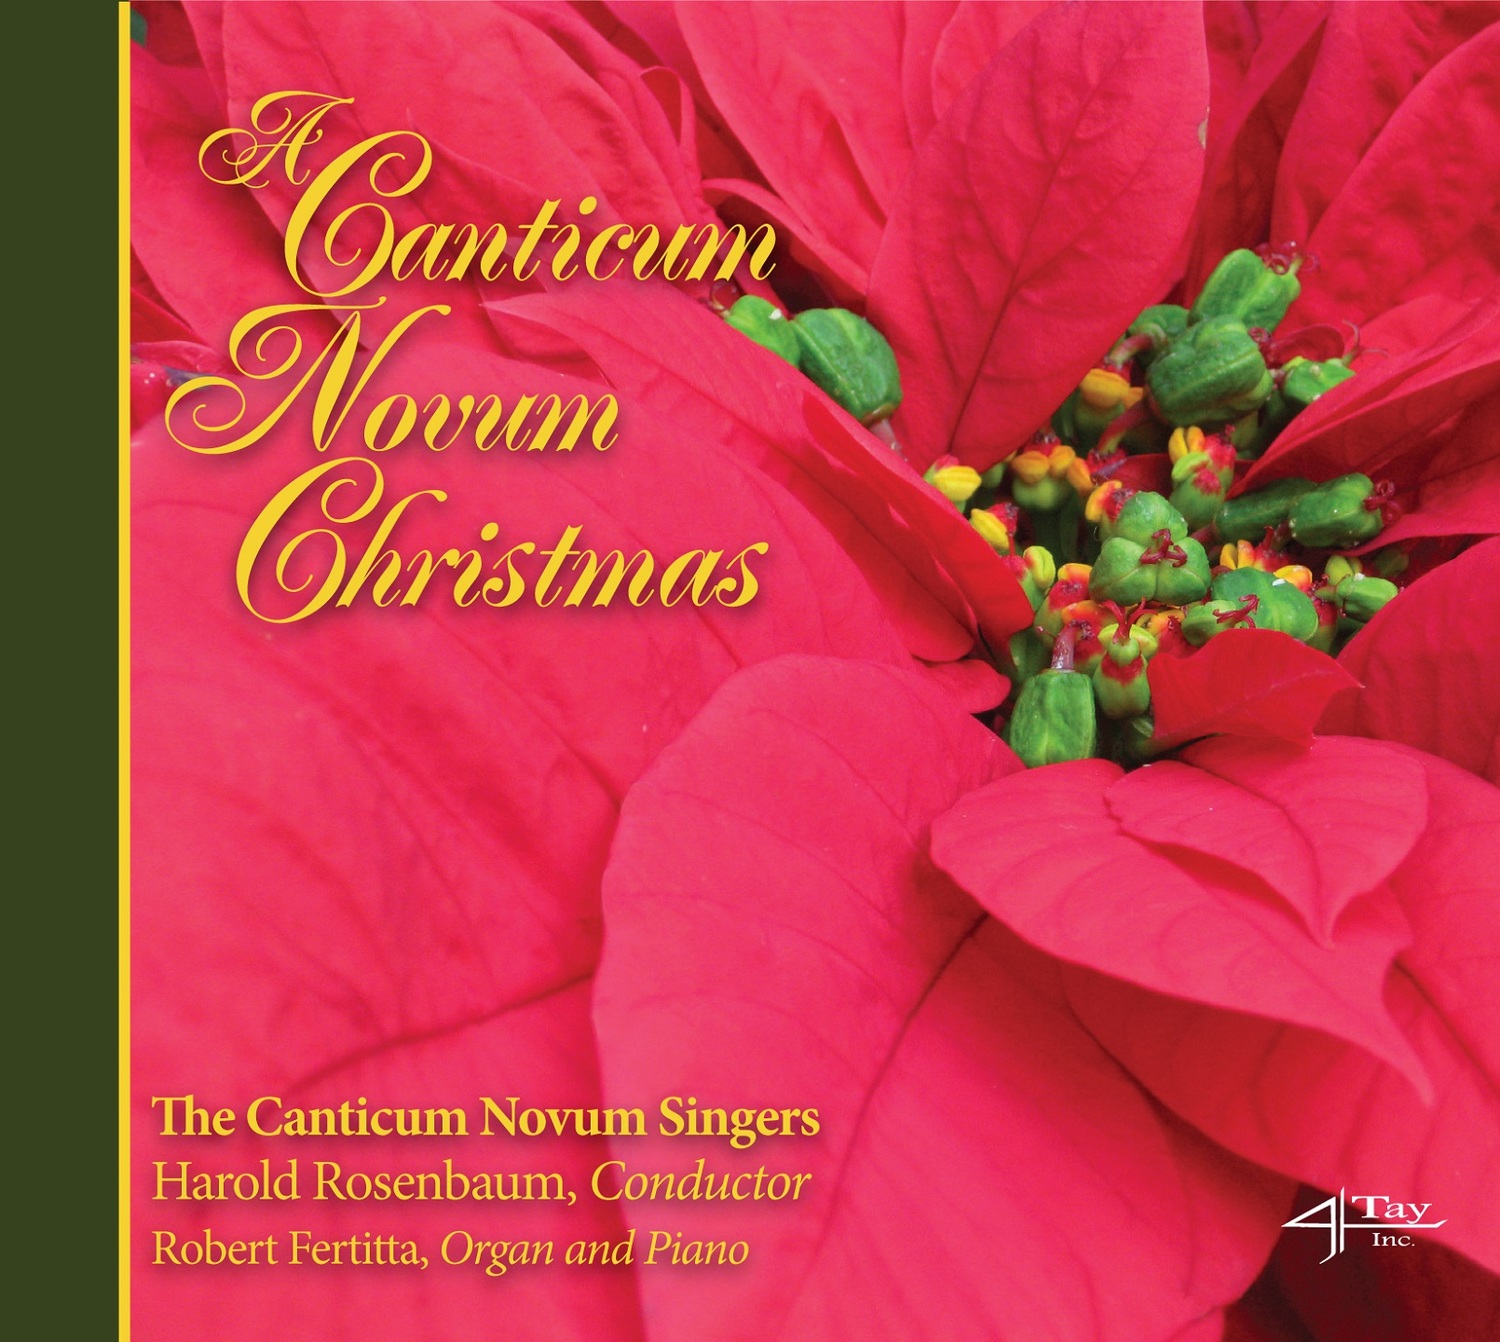 The Canticum Novum Singers Presents A CANTICUM NOVUM CHRISTMAS 